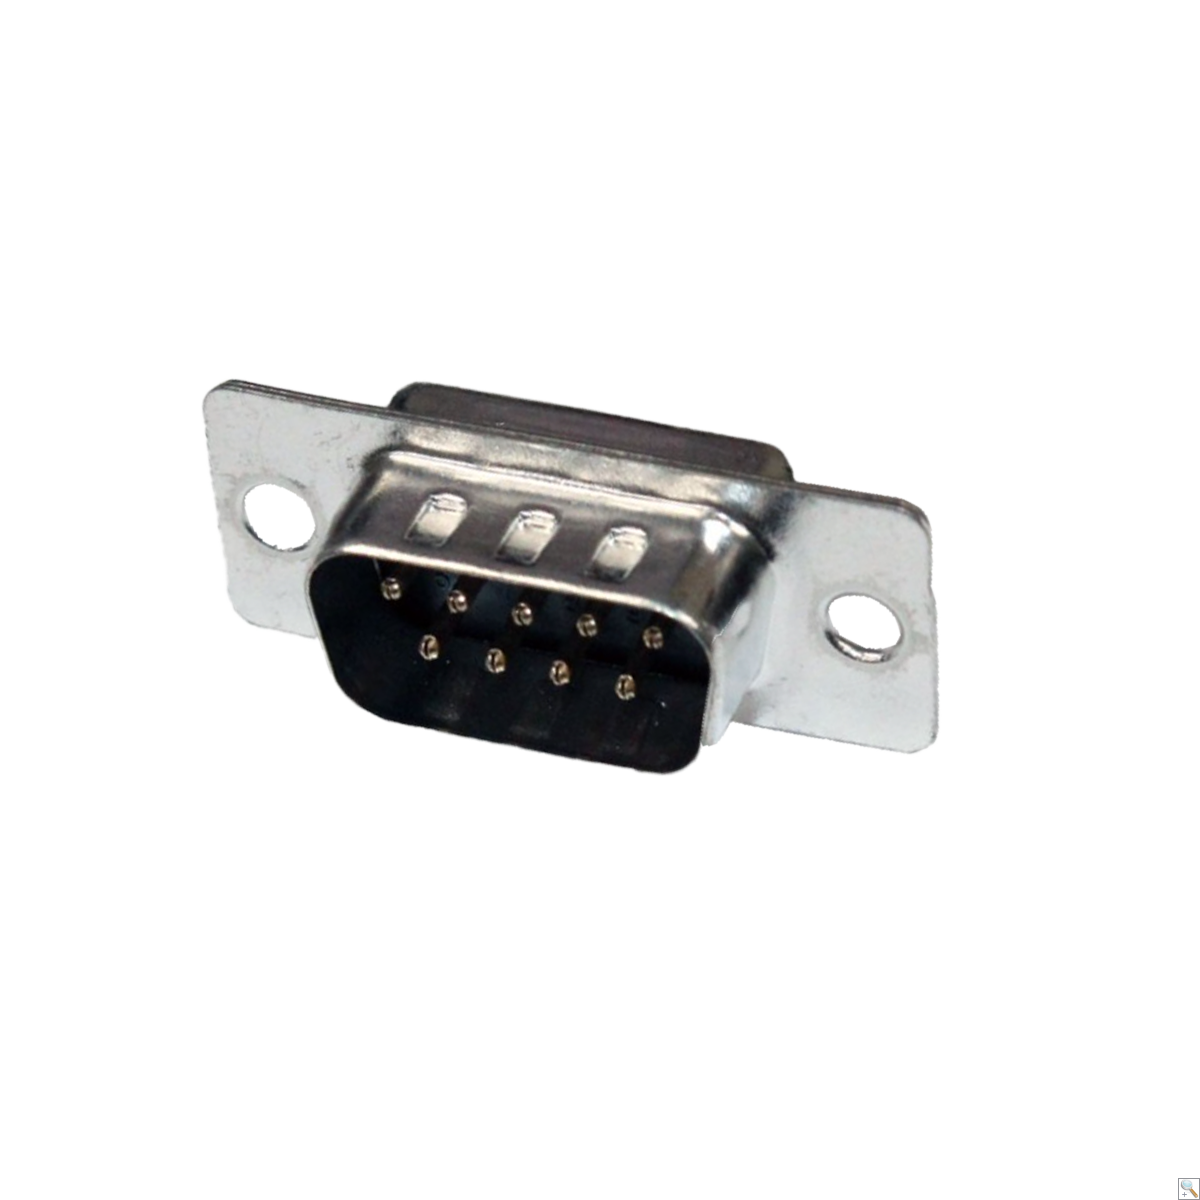 D sub connector - 9 way plug